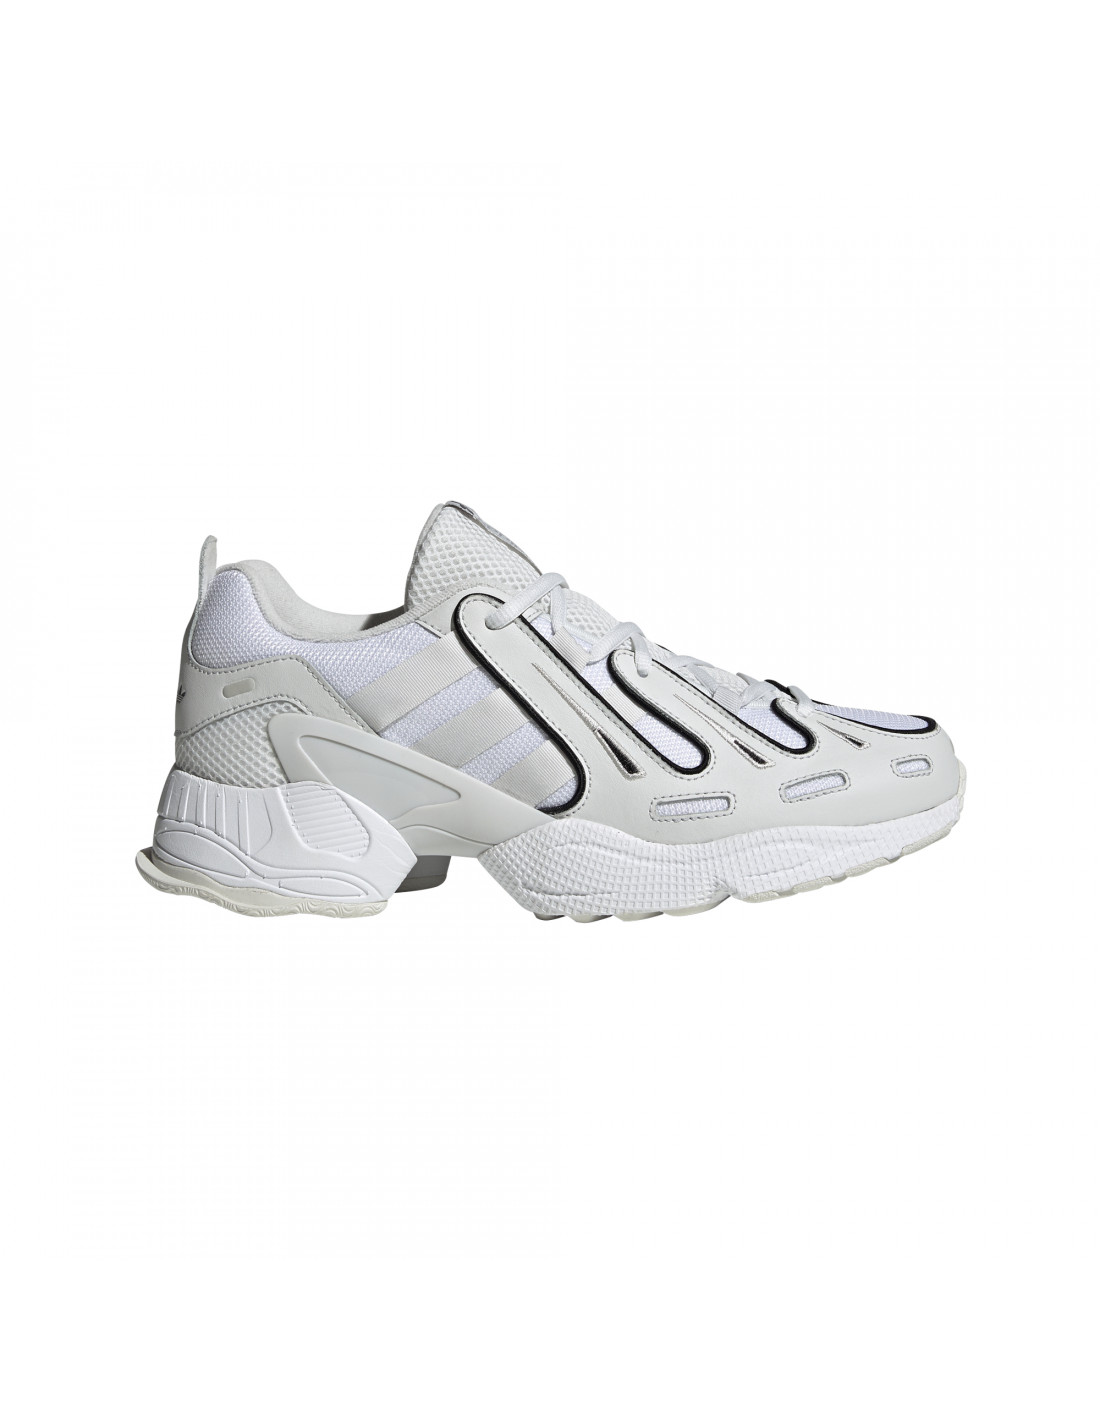 Zapatillas adidas Originals EQT Gazelle Color Blanco Tallas calzado Europa